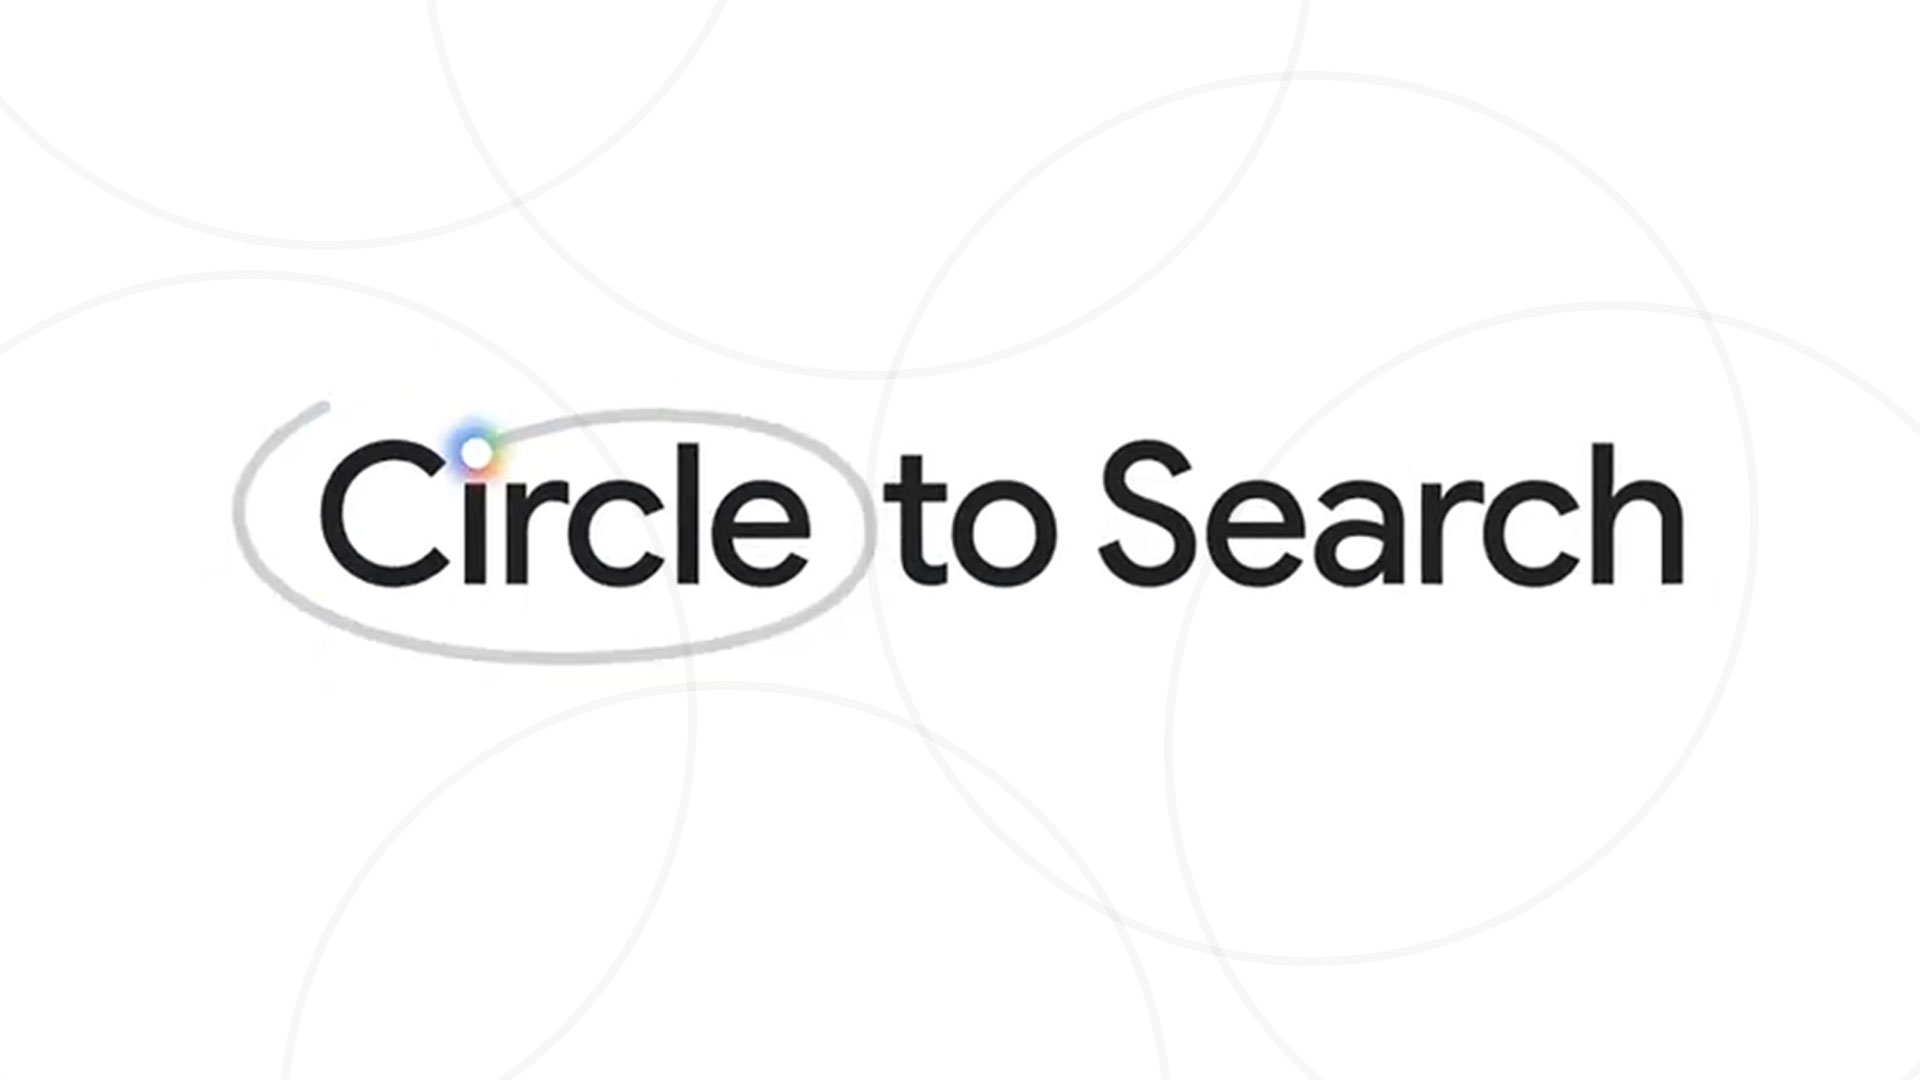 200 میلیون دستگاه Circle to Search